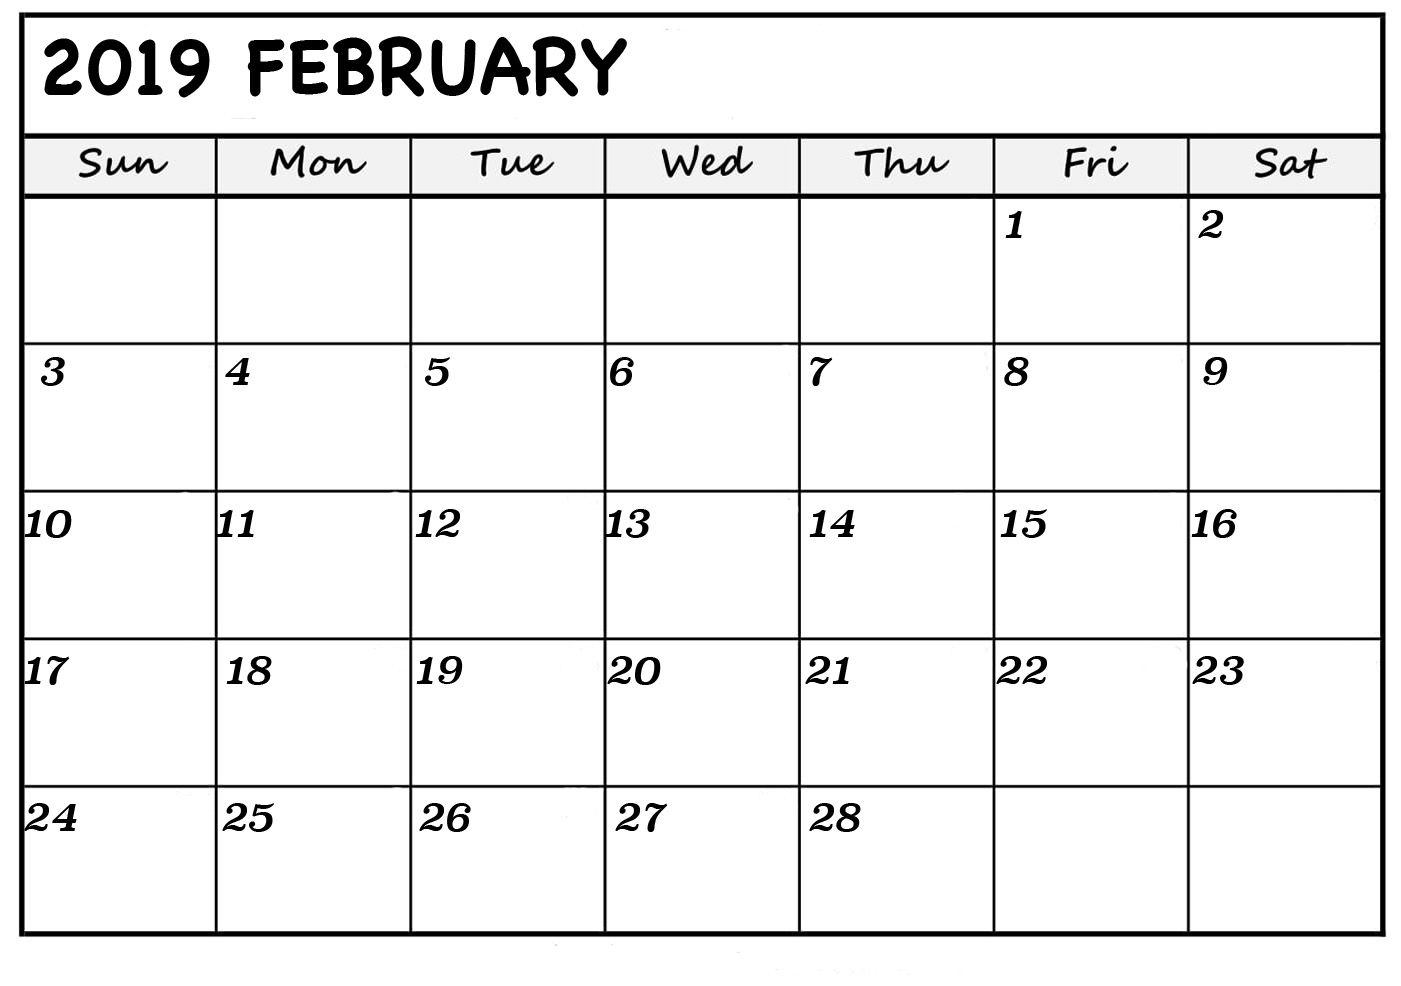 February 2019 Calendar Excel Free February 2019 Calendar Printable